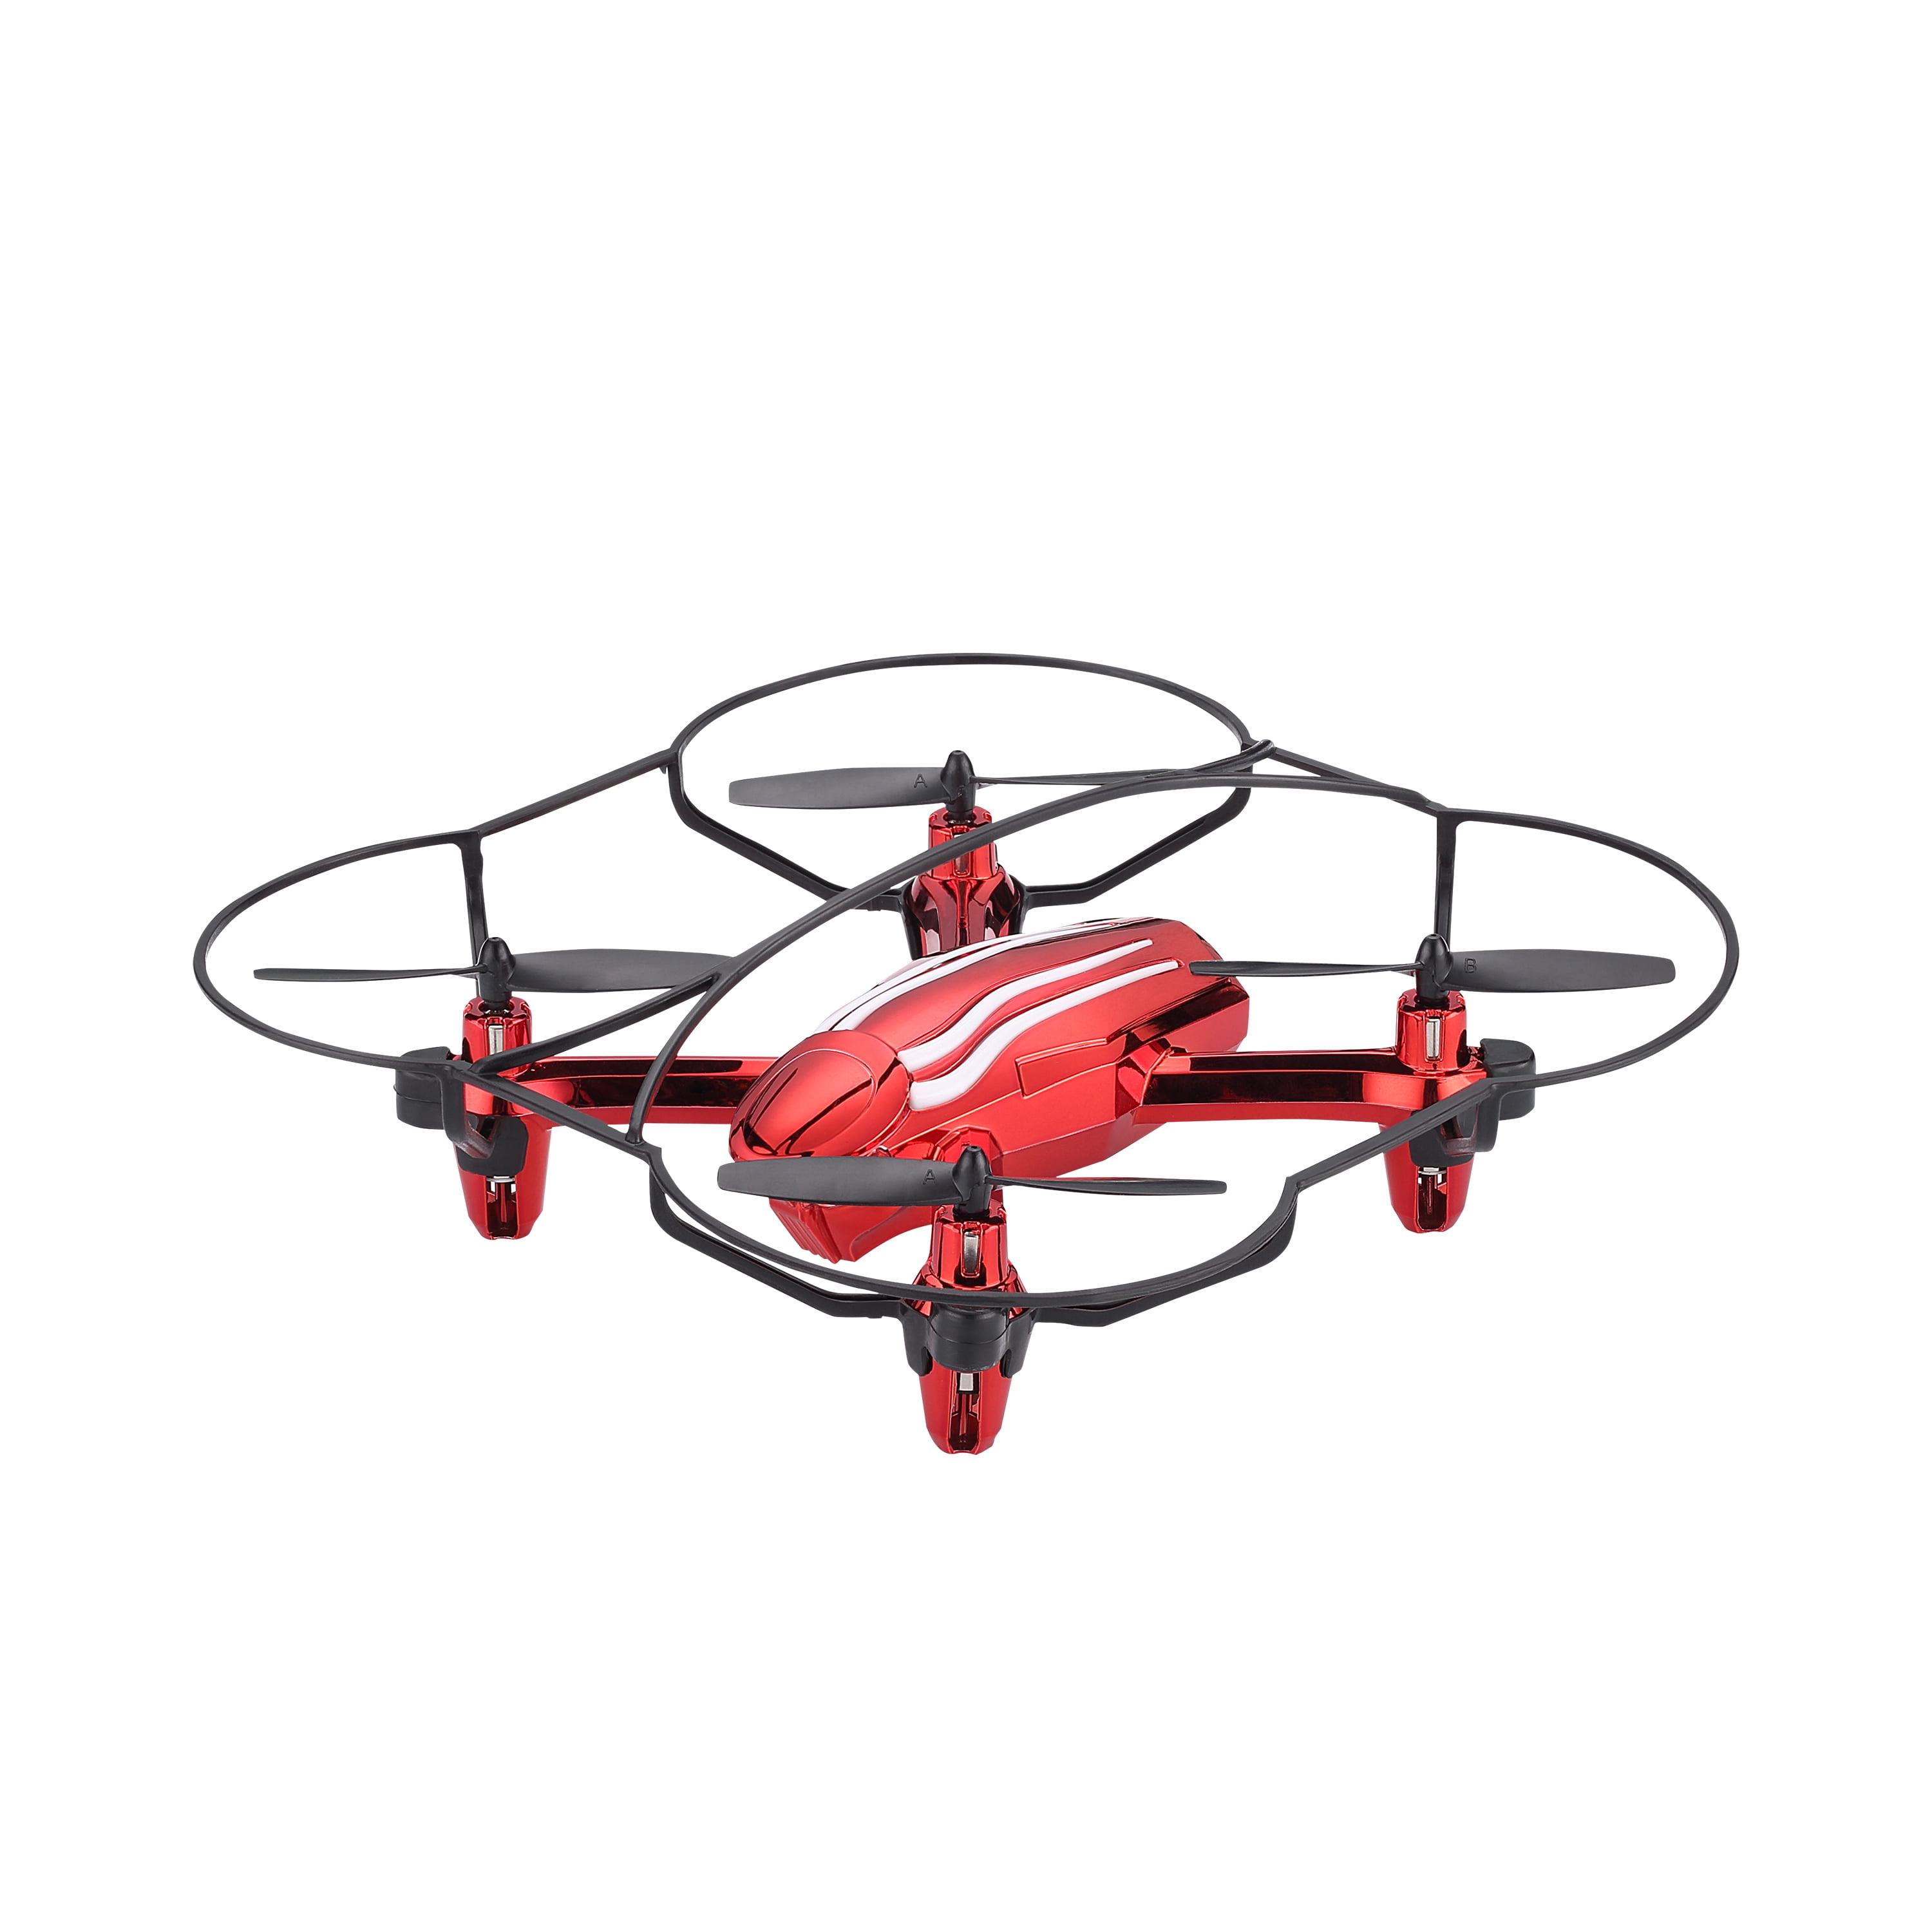 propel x03 drone